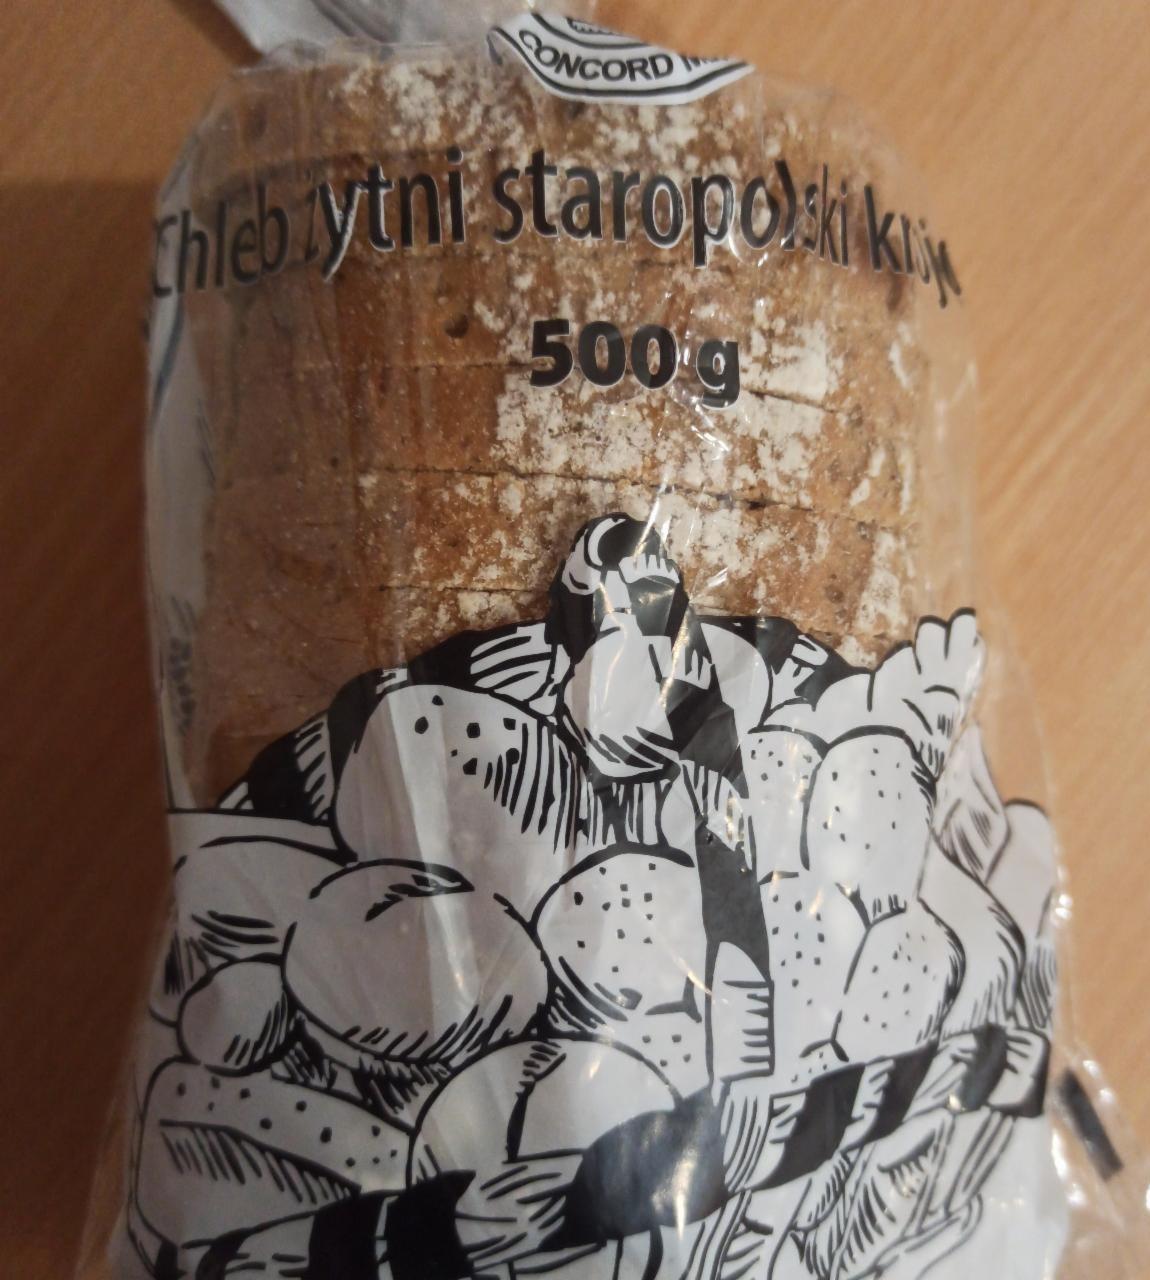 Zdjęcia - chleb żytni staropolski biedronka 